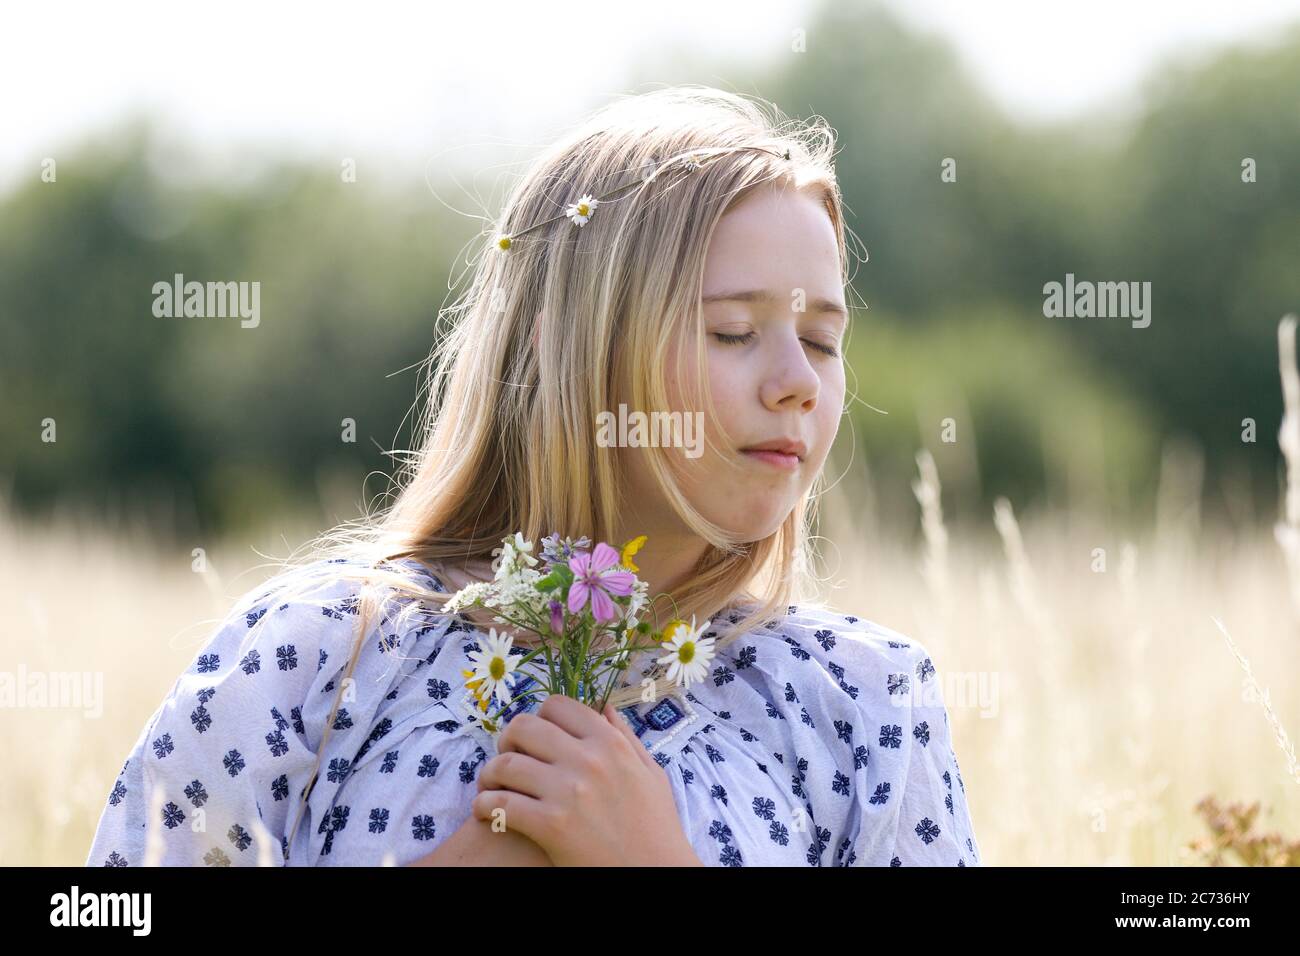 Una giovane ragazza hippy graziosa con una catena a margherita nei suoi capelli biondi tiene un poy dei fiori selvatici nel sole in un campo di pascolo in estate. Foto Stock